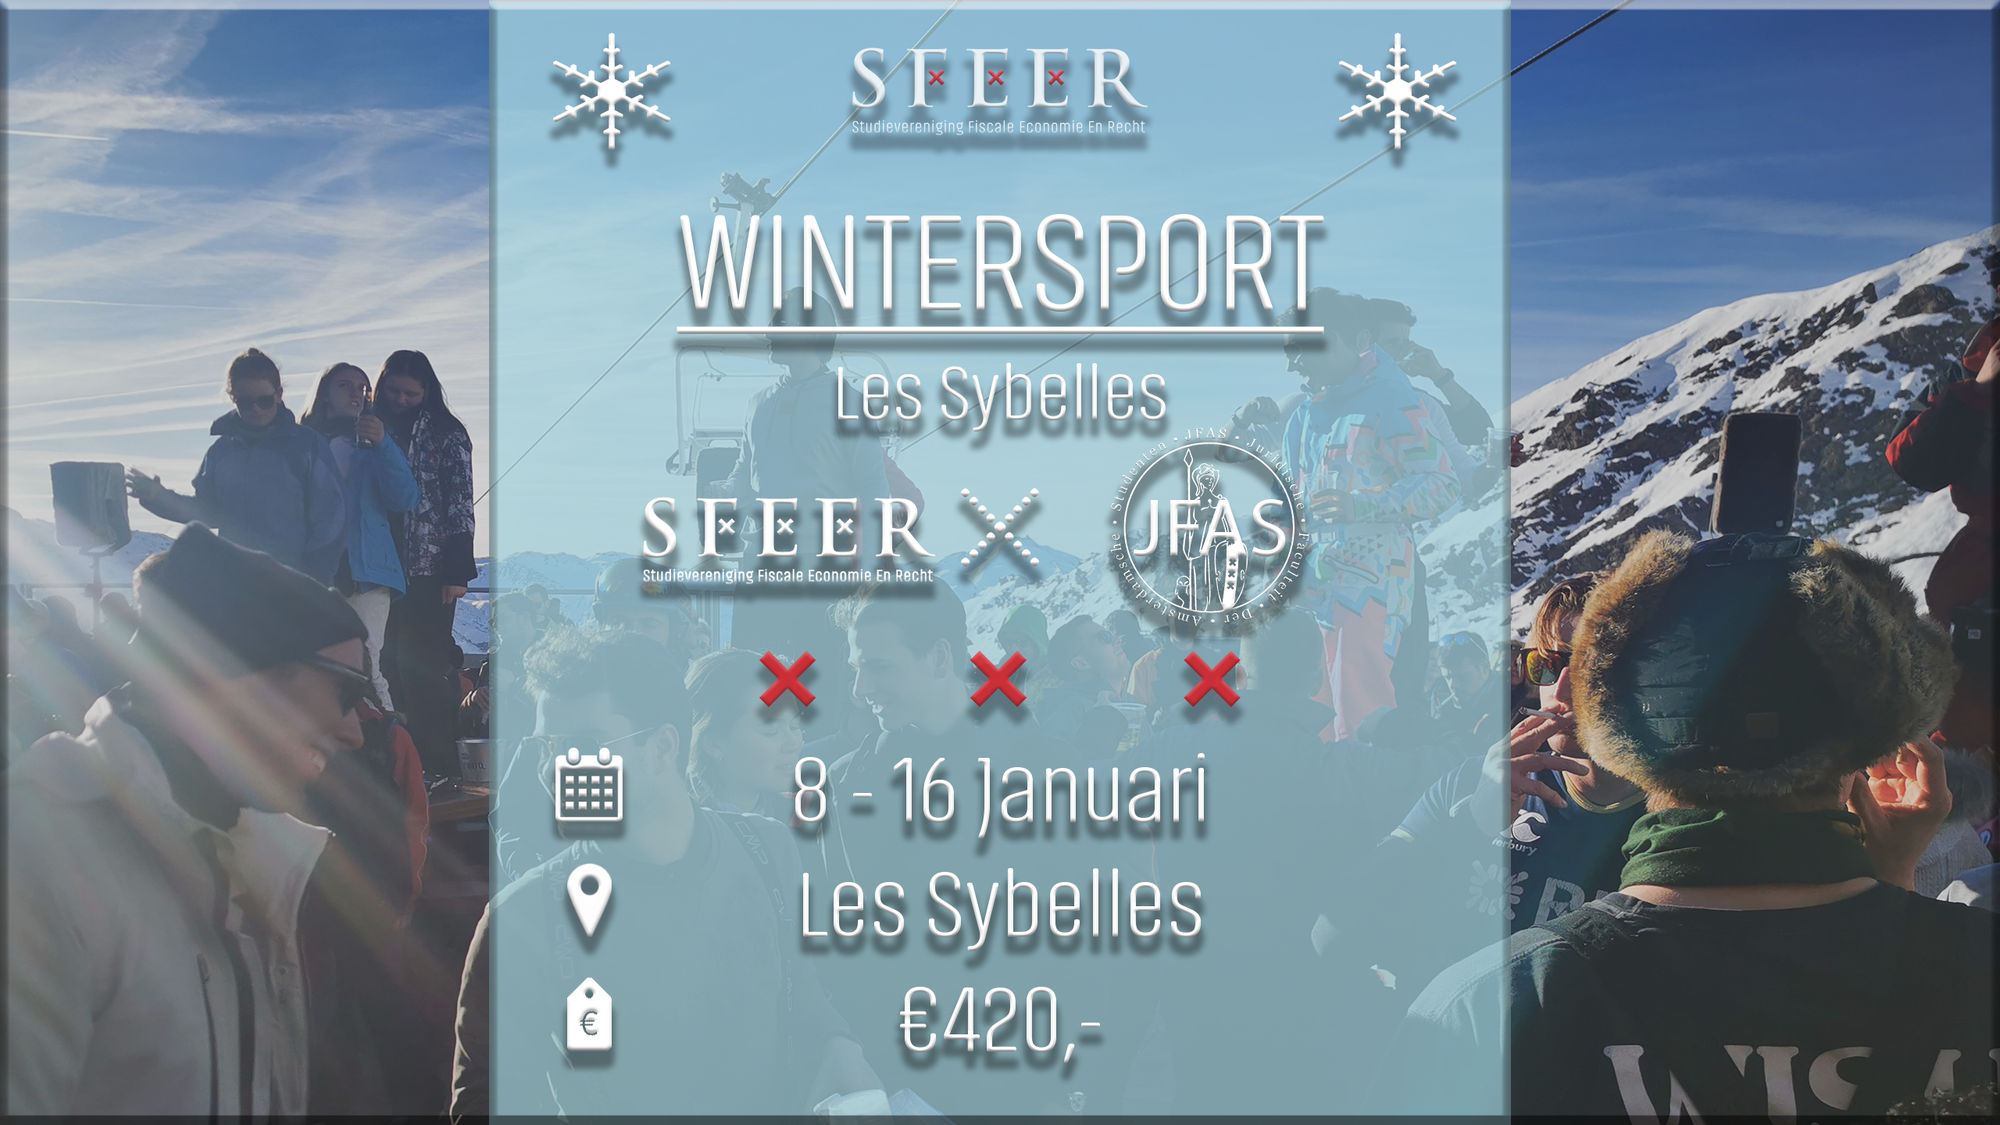 SFEER X JFAS Wintersport 2022